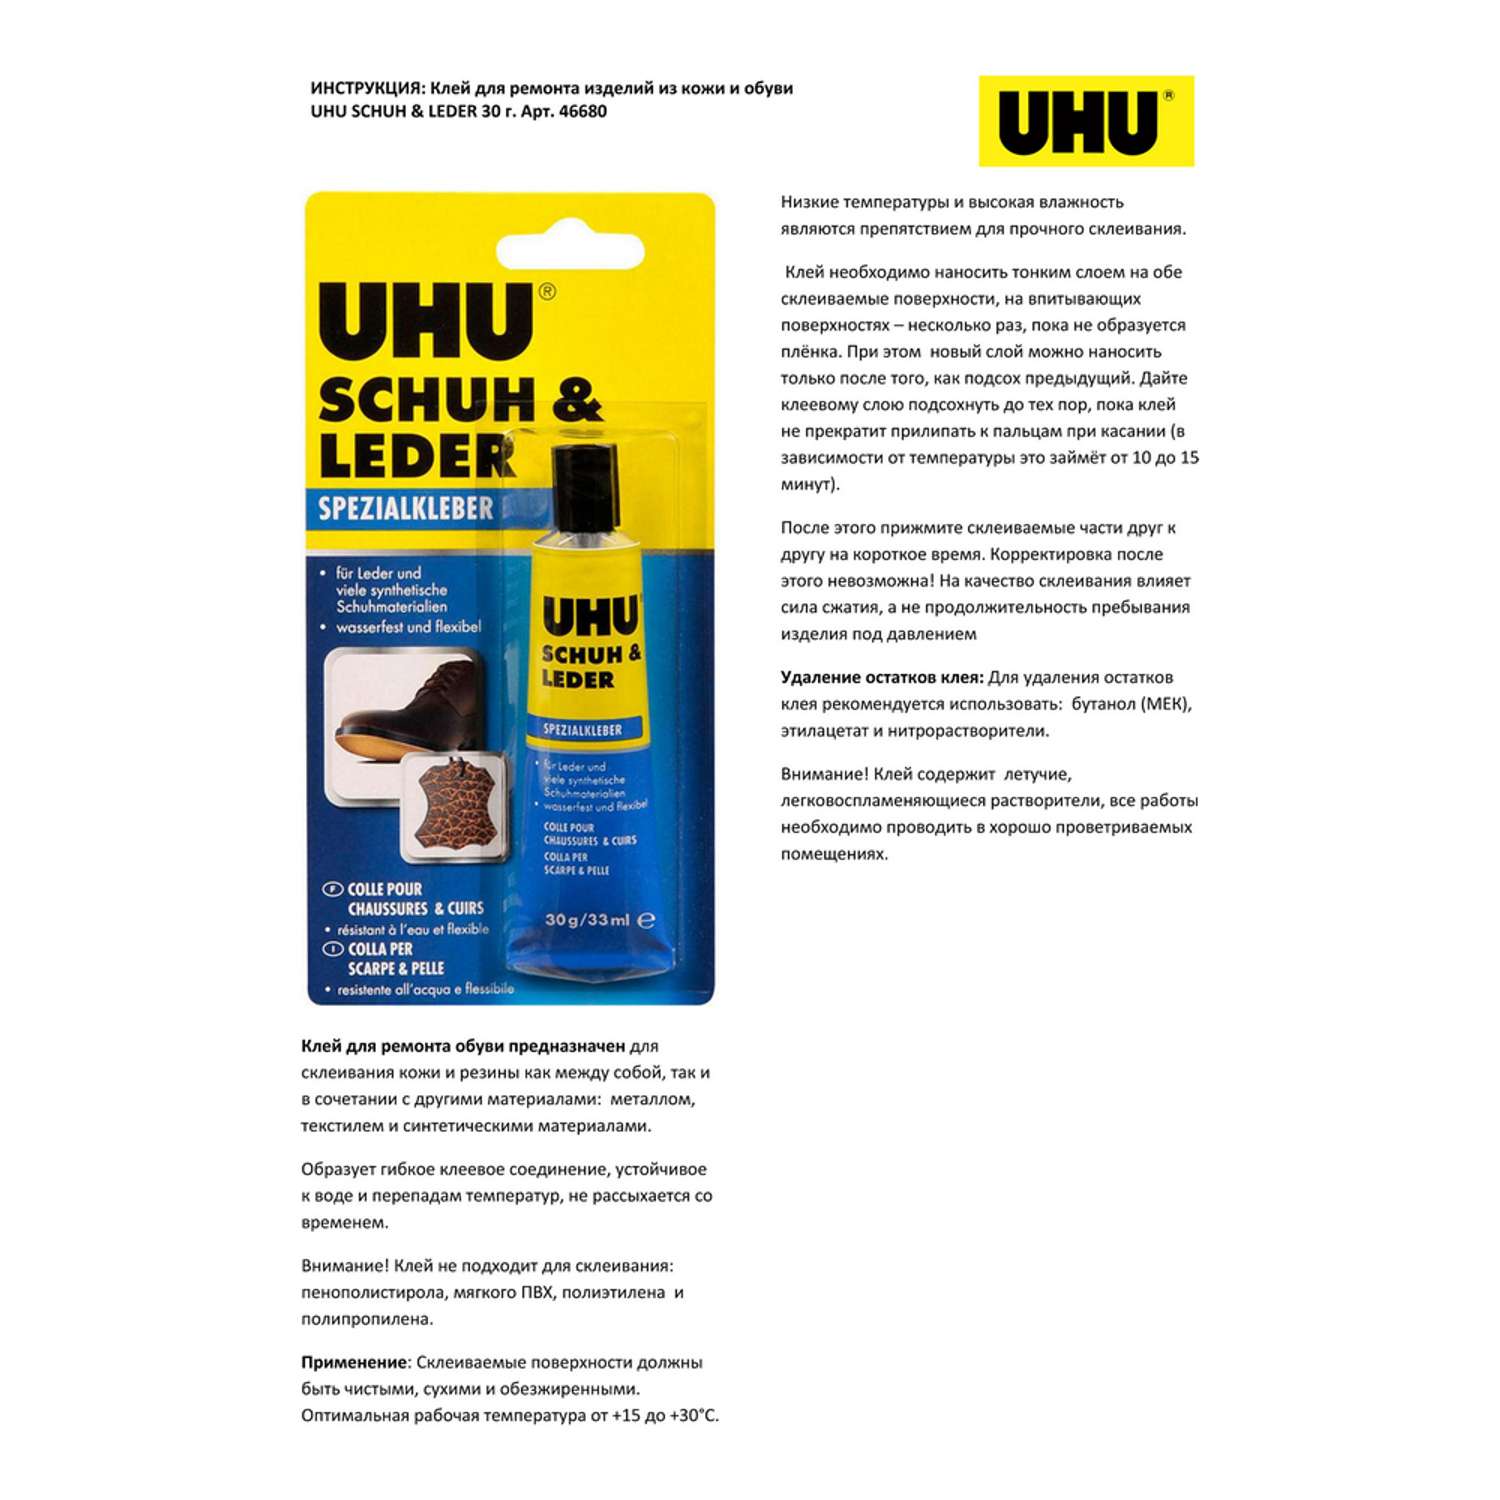 Клей UHU для ремонта изделий из кожи и обуви 30гр. Schuh and Leder 46680 - фото 4